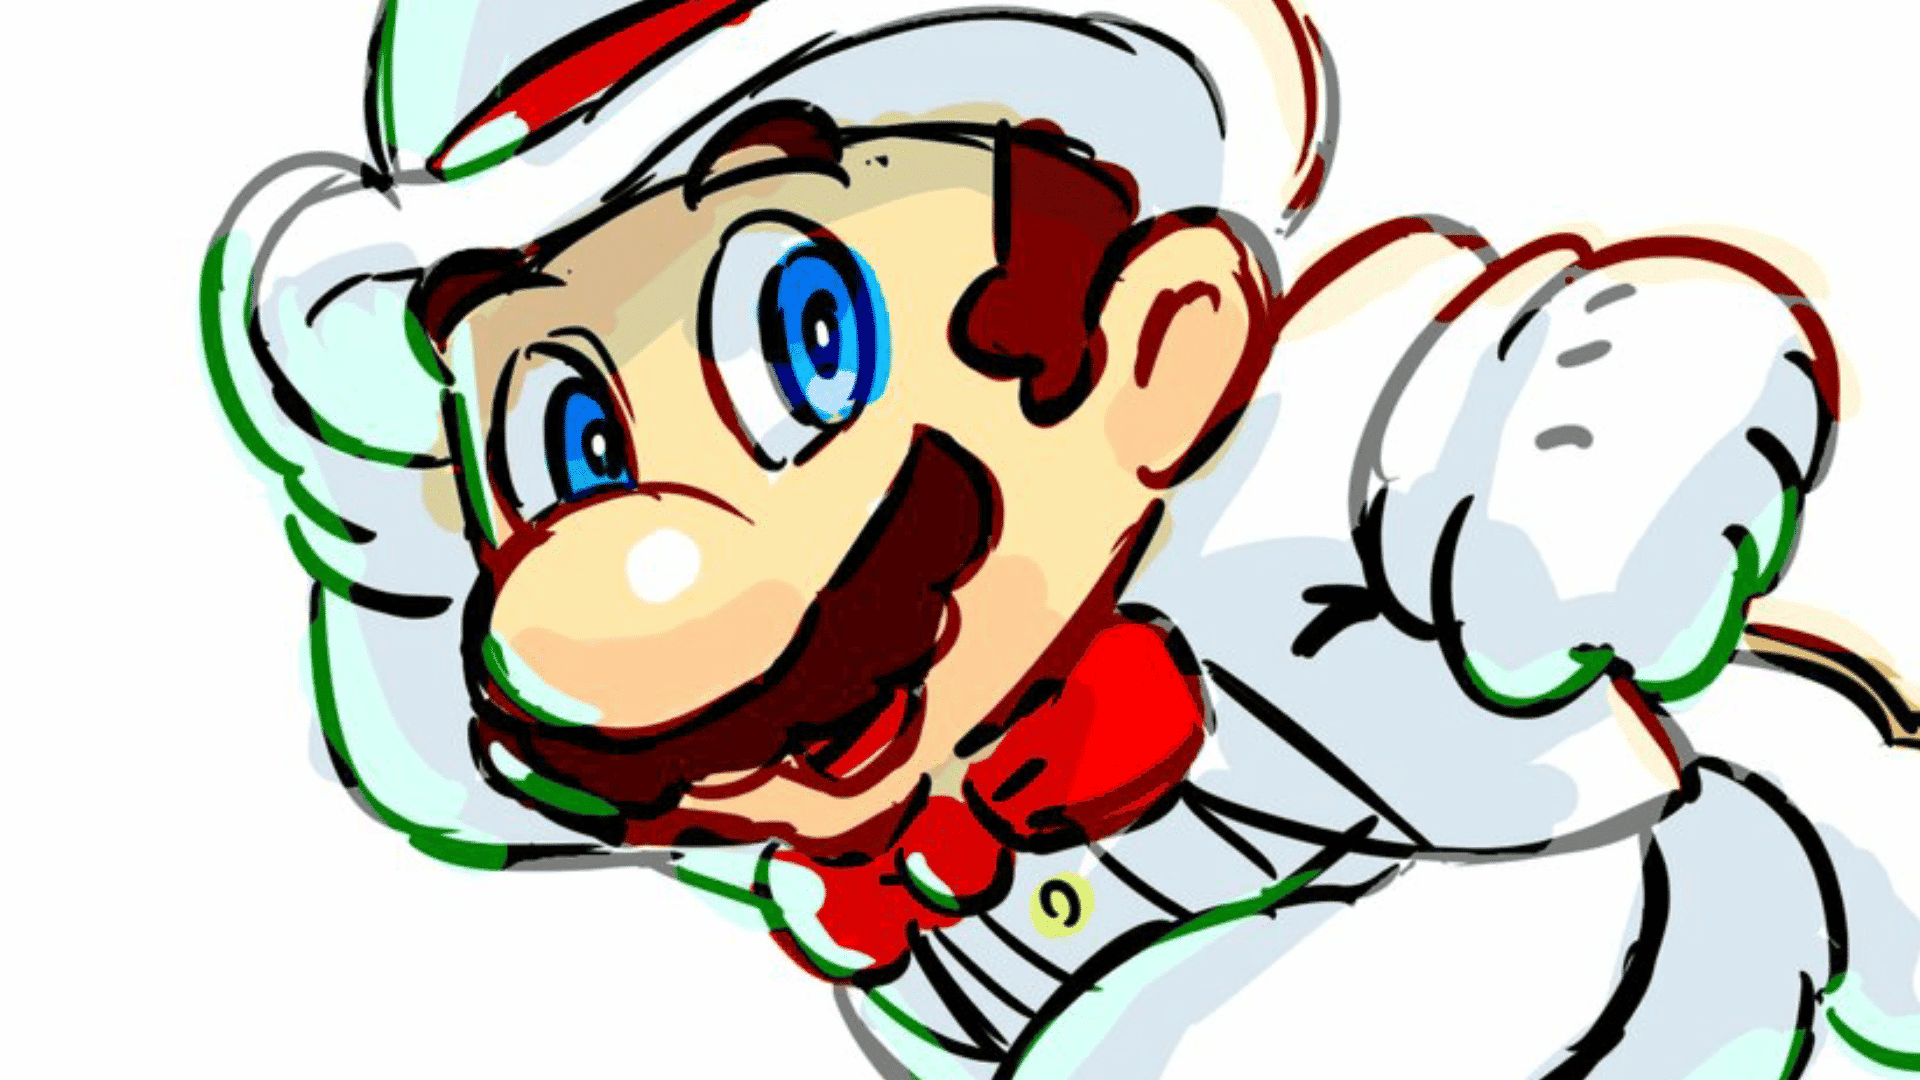 [Rumor] Popular leaker filtra detalles del próximo juego de Super Mario